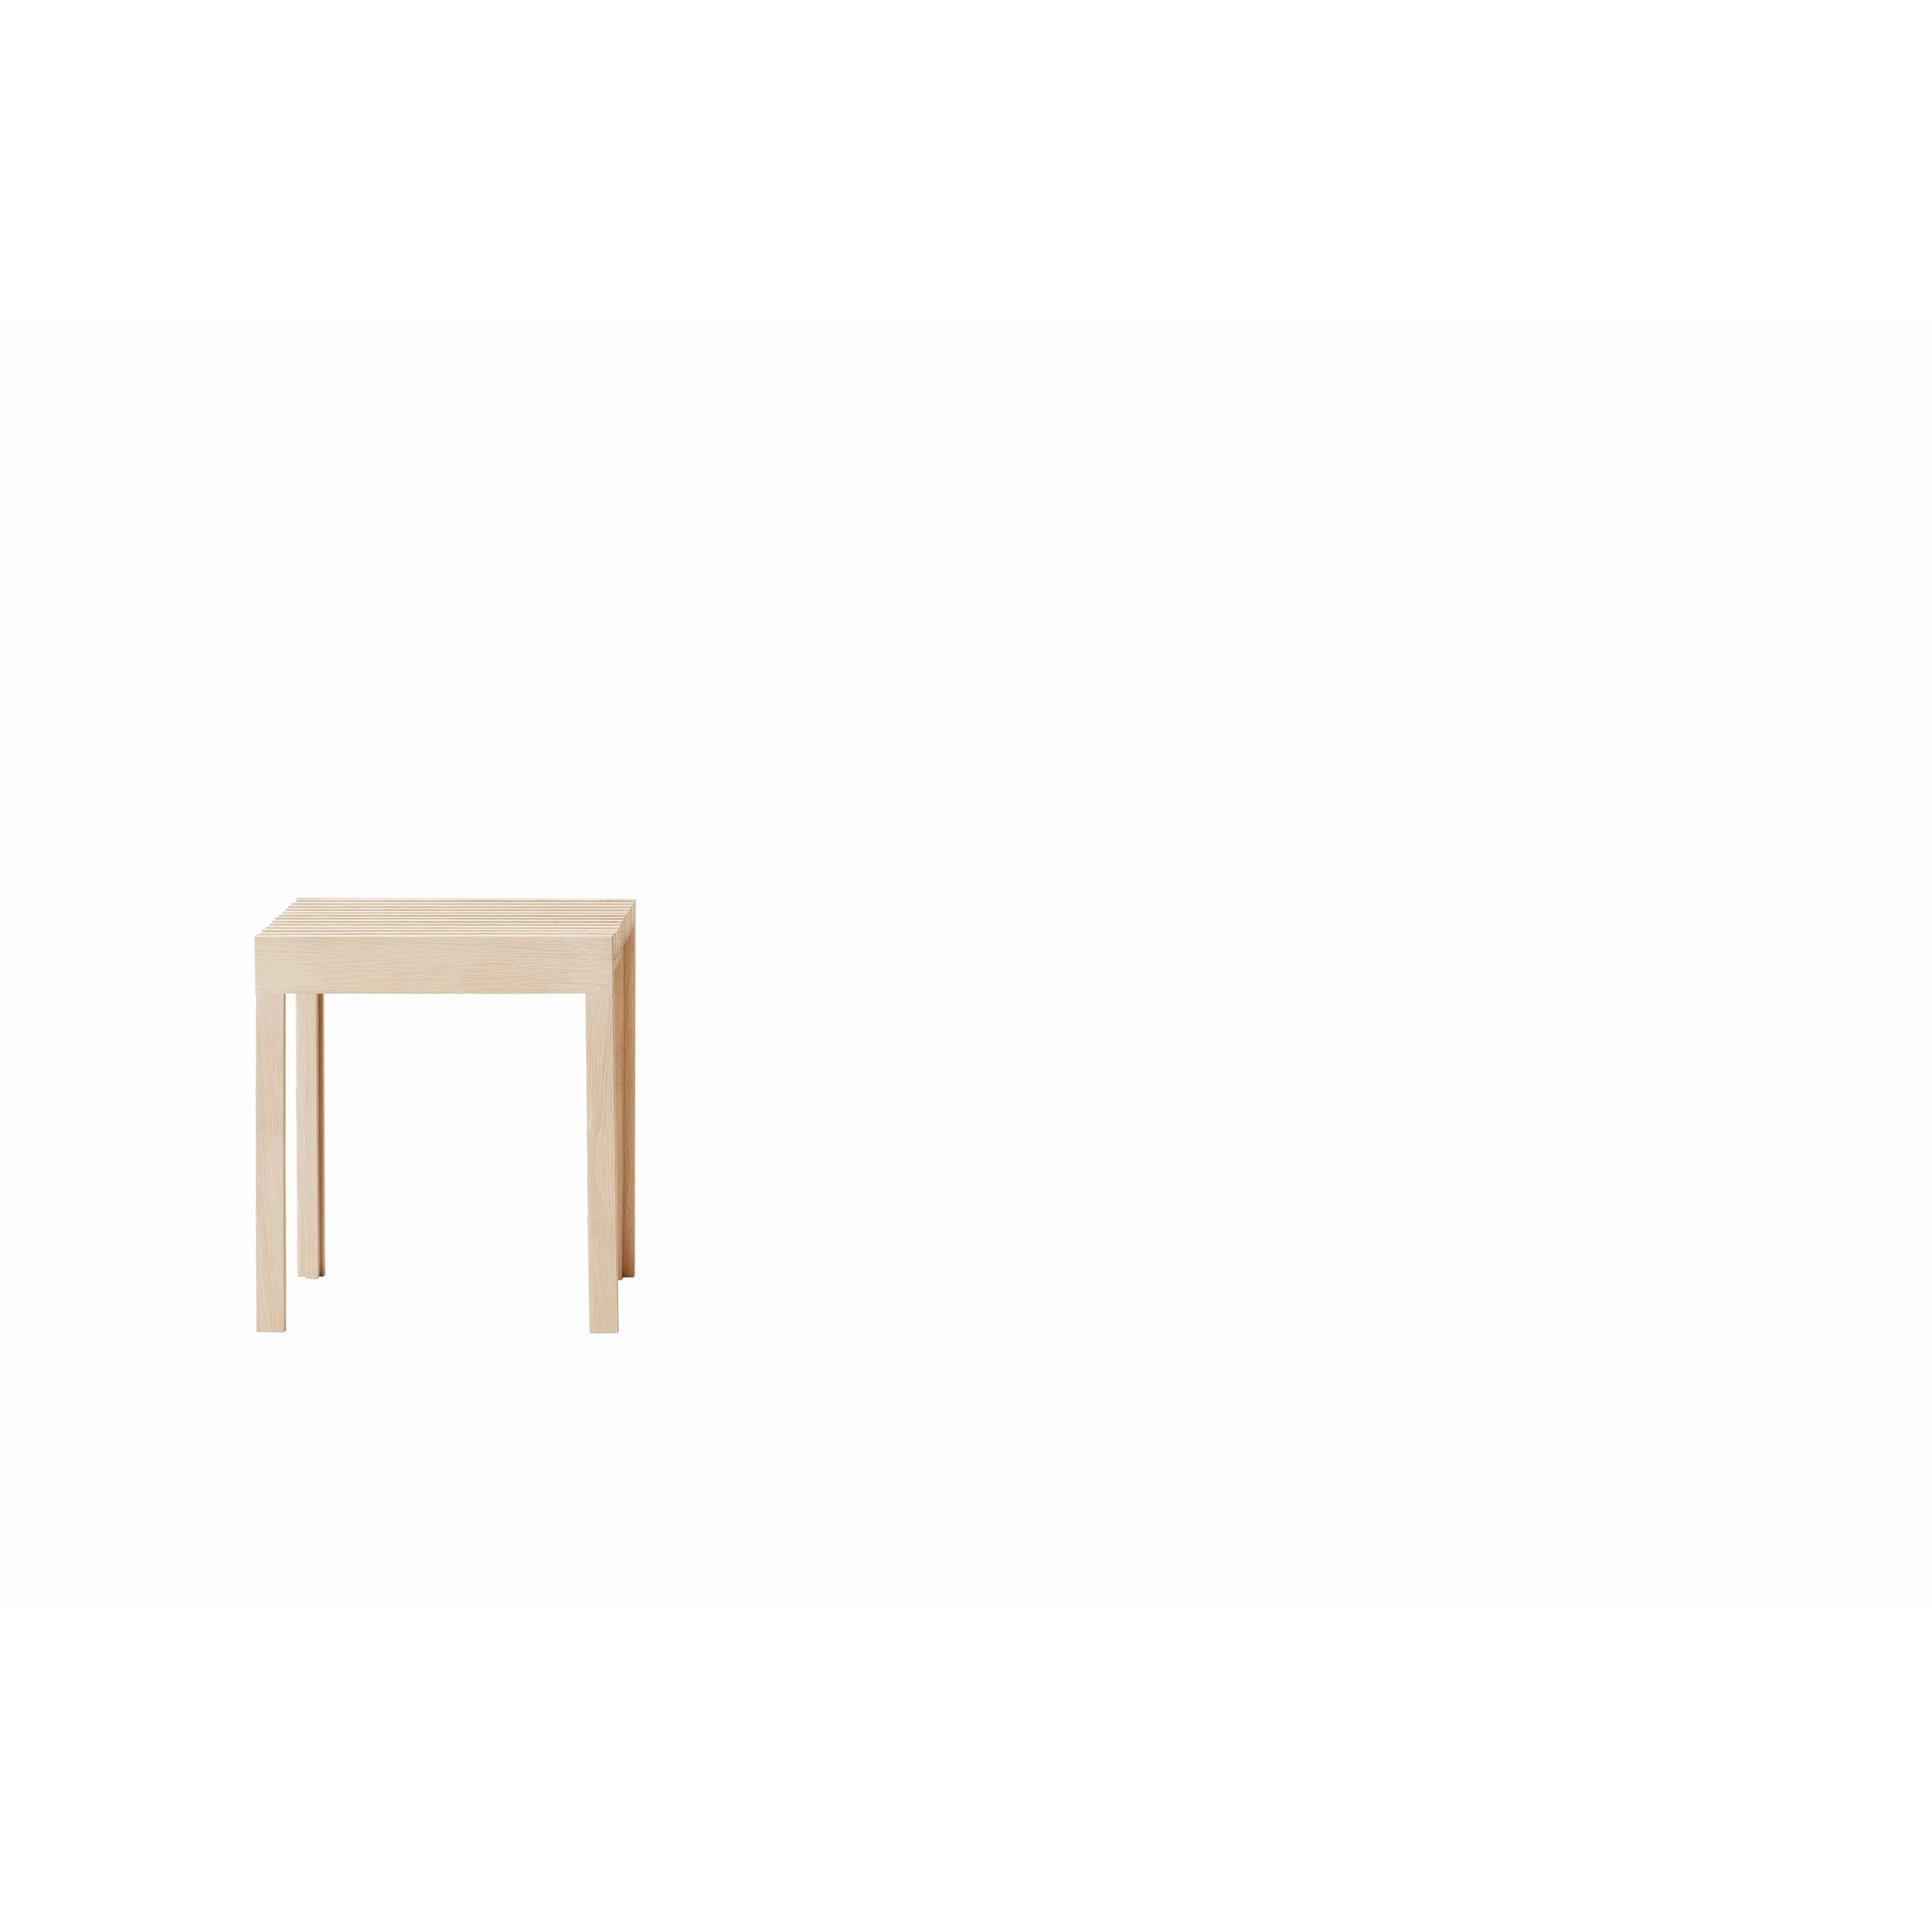 形式和精炼轻便的凳子。白橡木